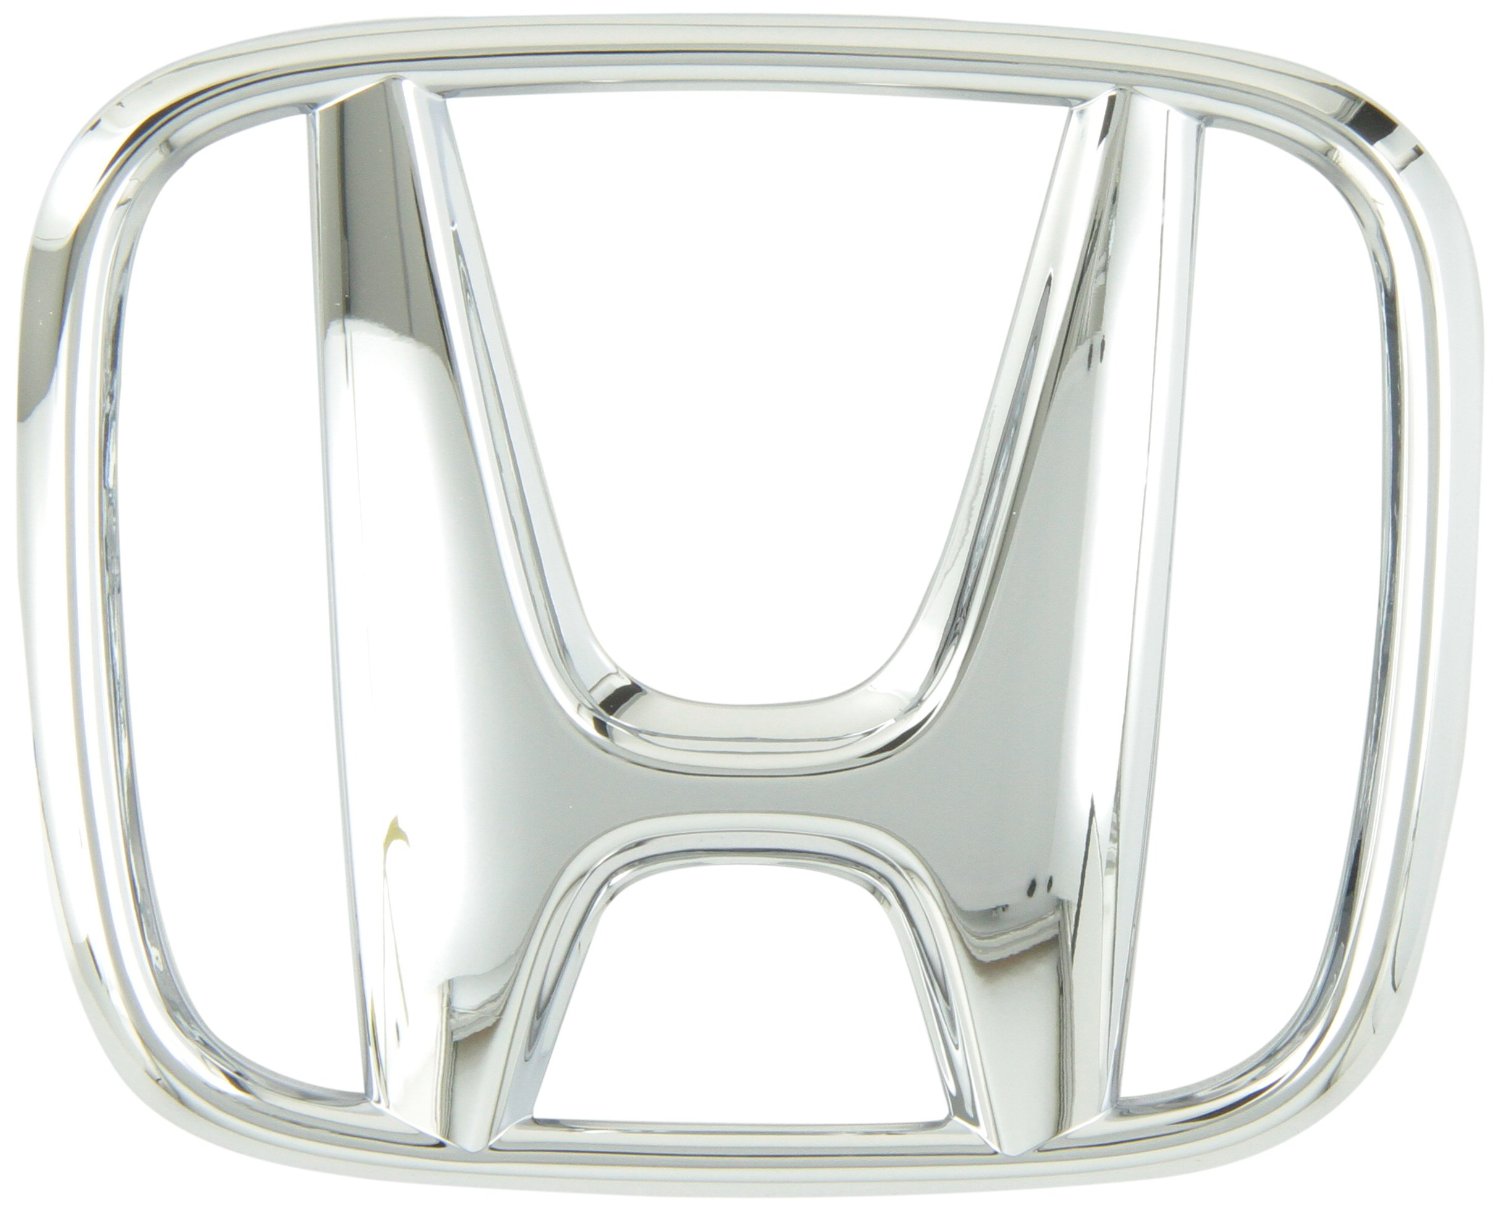 Honda CRV Front Grille Emblem